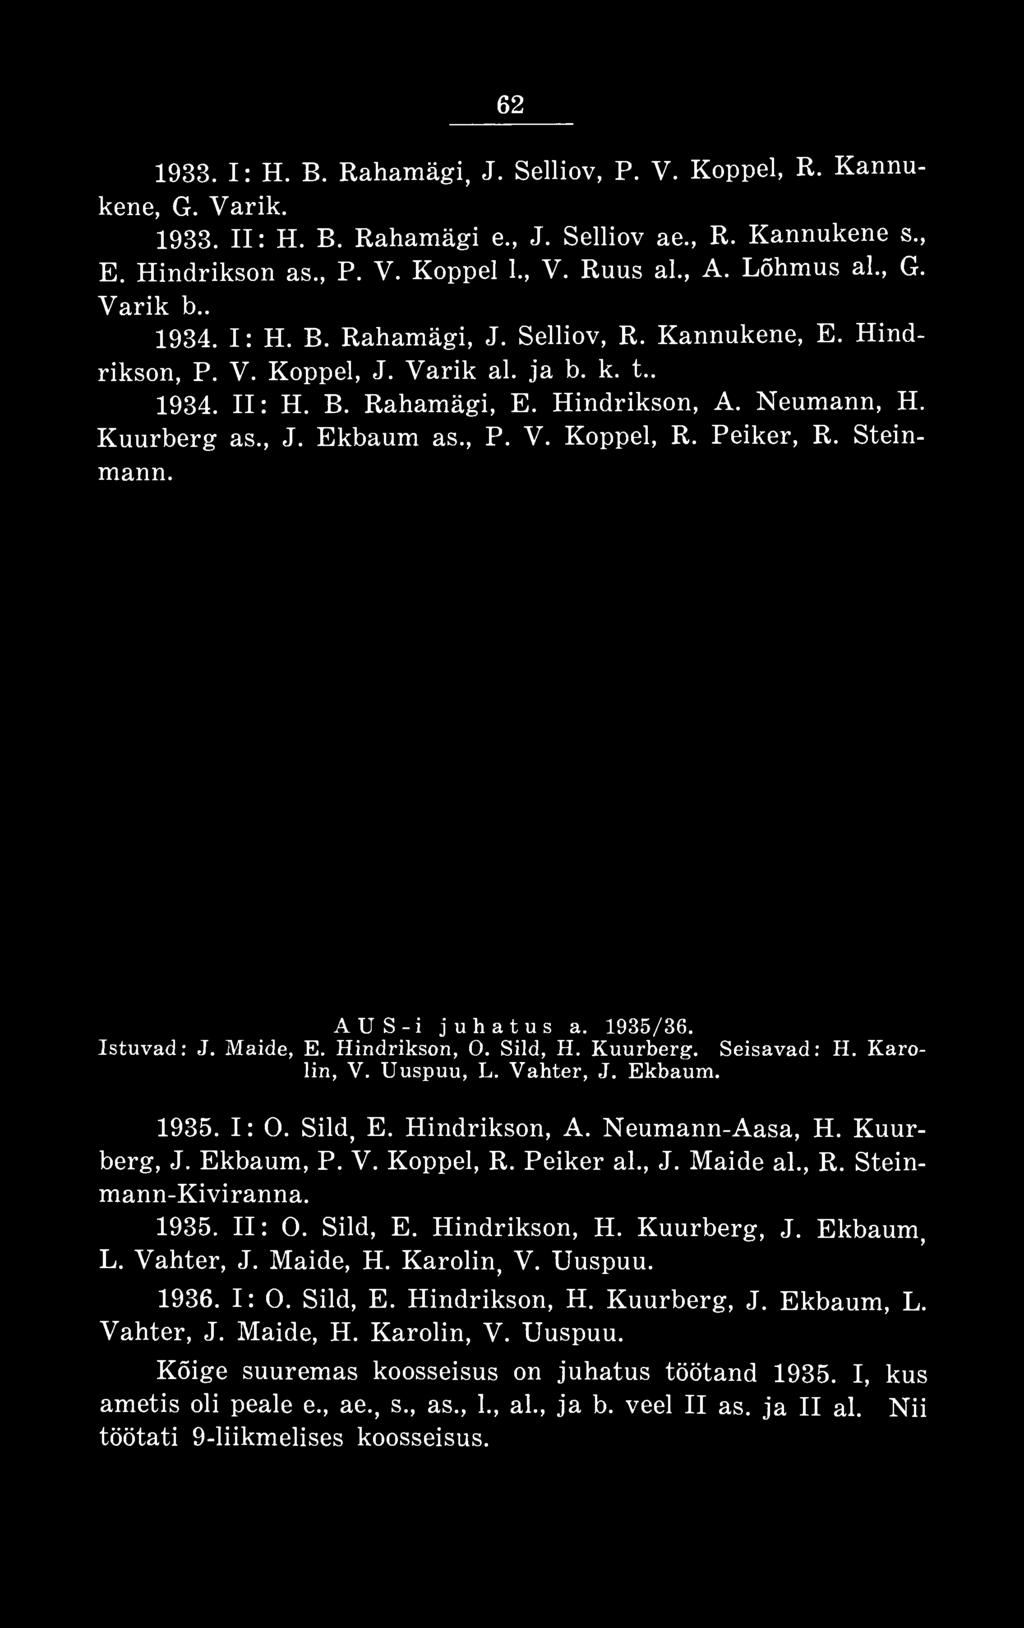 1935. II: 0. Sild, E. Hindrikson, H. Kuurberg, J. Ekbaum, L. Vahter, J. Maide, H. Karolin, V. Uuspuu. 1936. I: 0. Sild, E. Hindrikson, H. Kuurberg, J. Ekbaum, L. Vahter, J. Maide, H. Karolin, V. Uuspuu. Kõige suuremas koosseisus on juhatus töötand 1935.